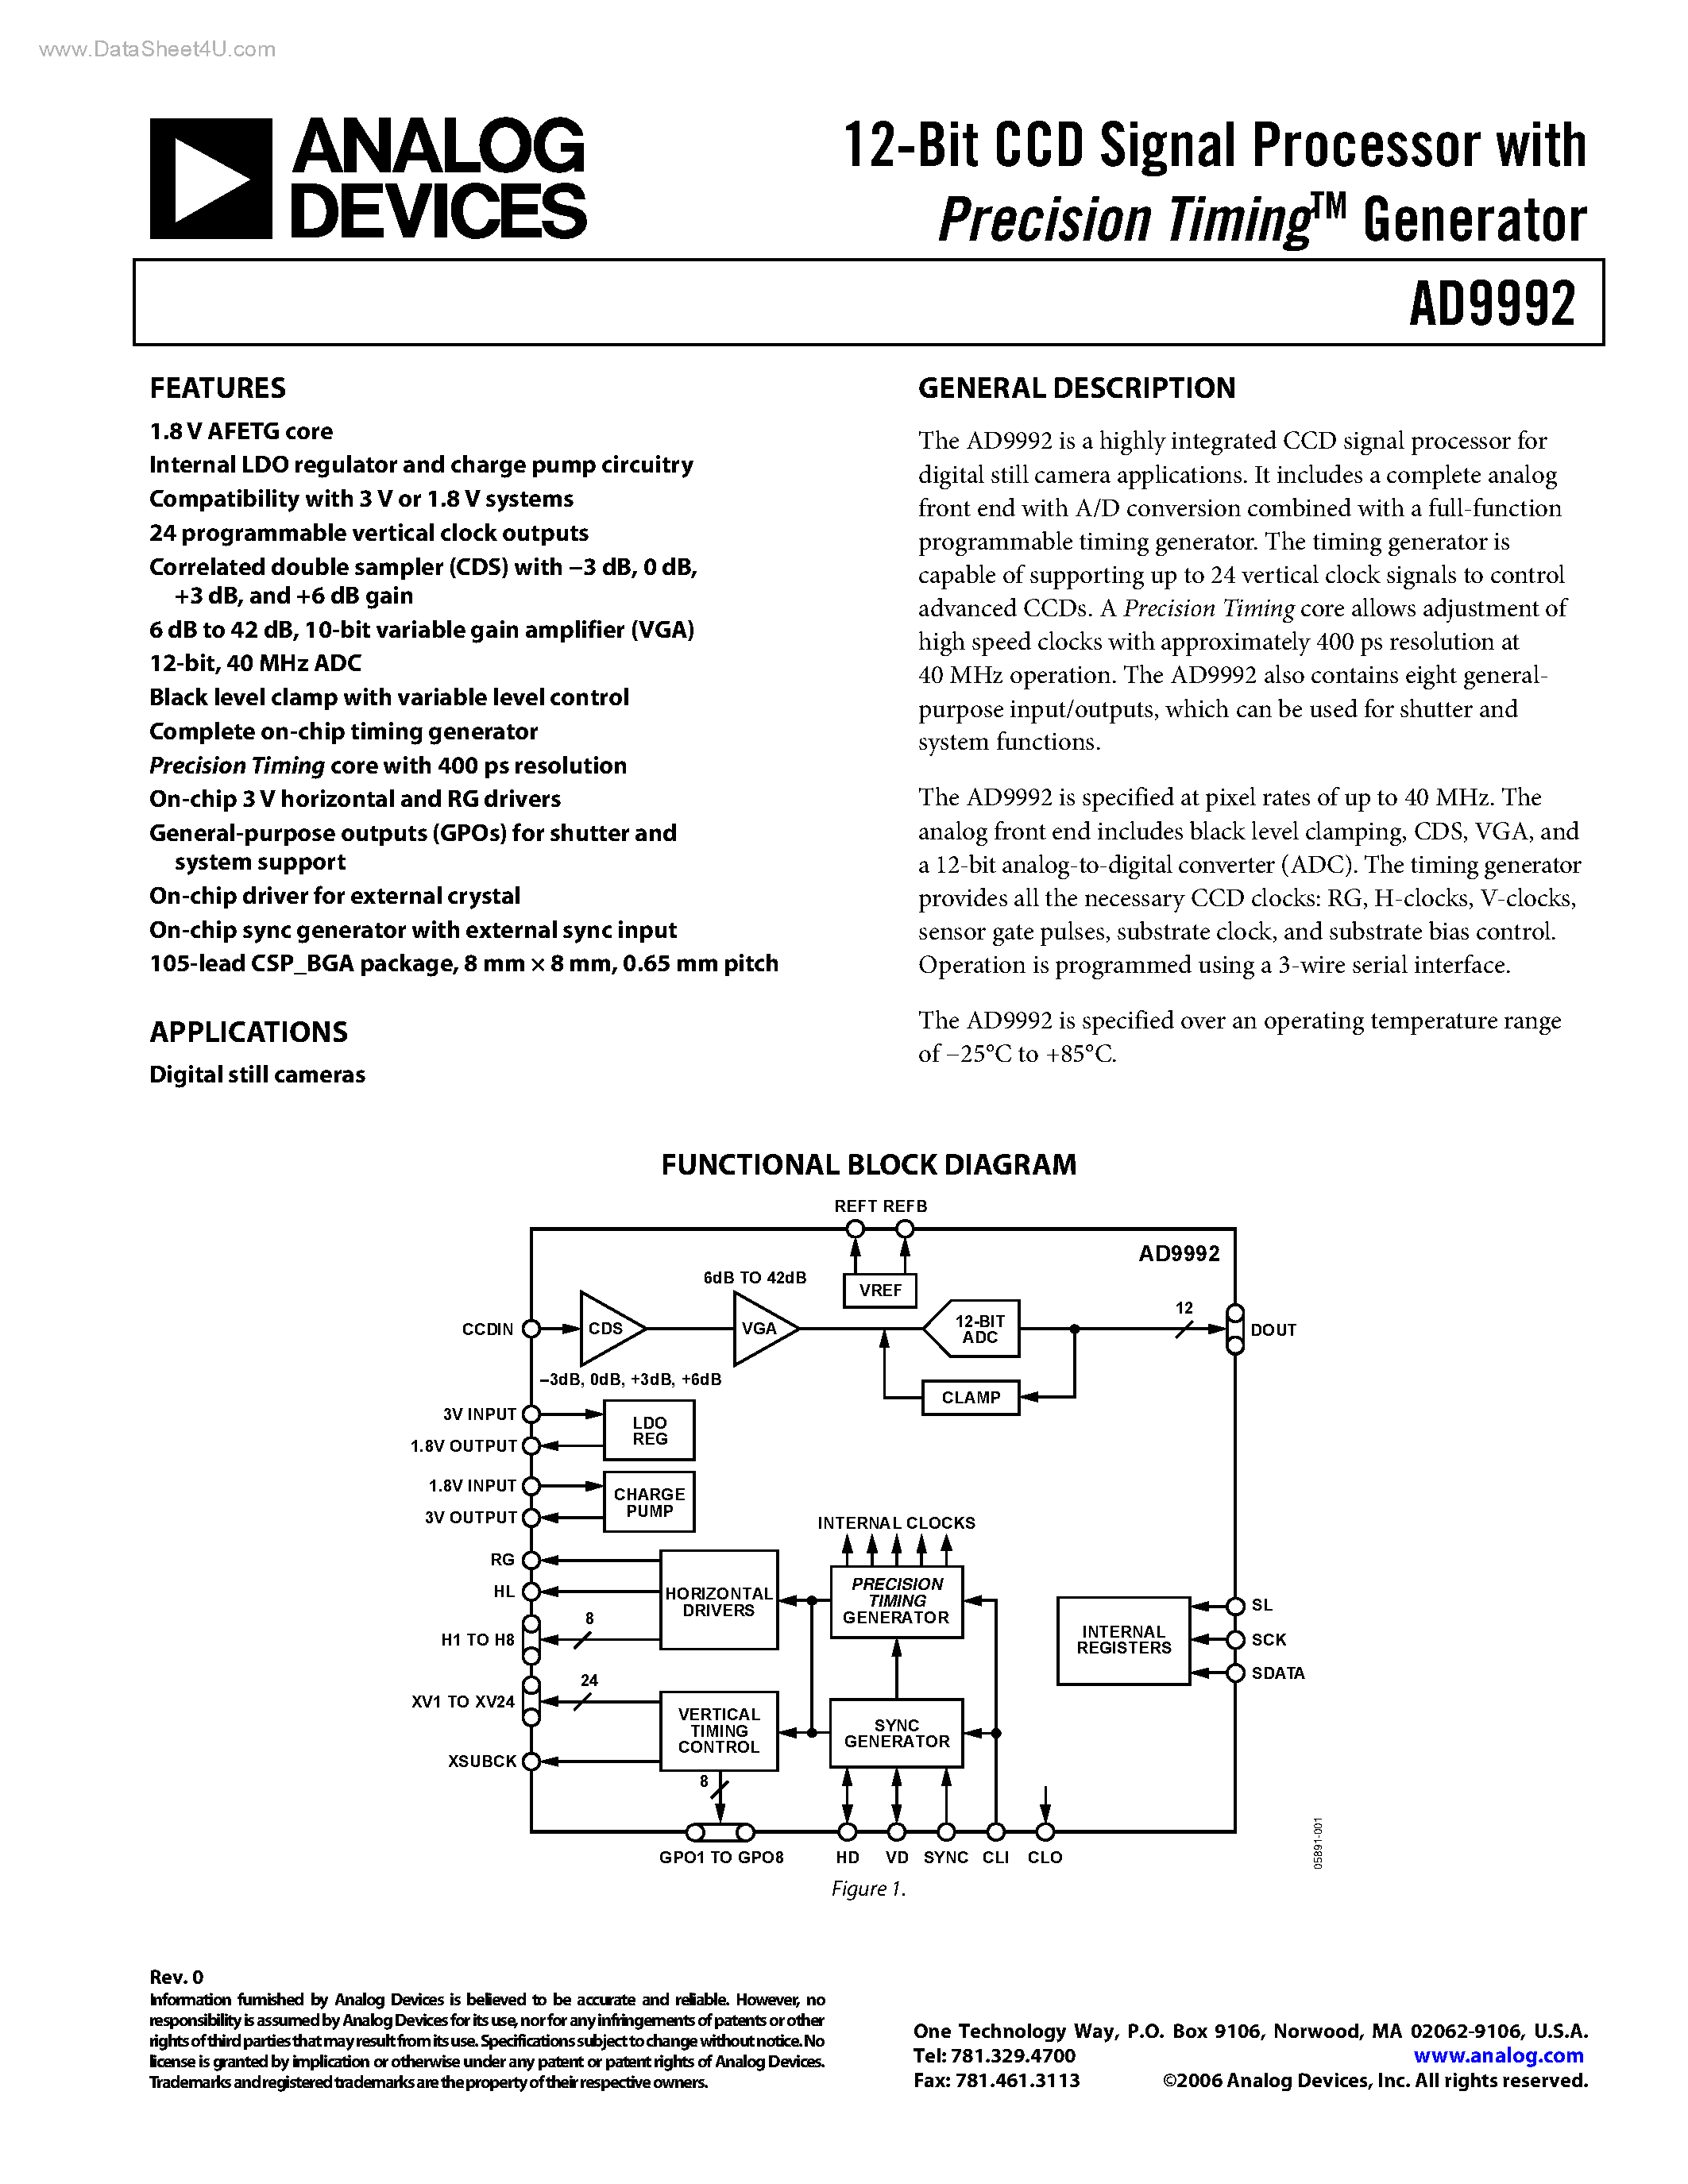 Даташит AD9992 - 12-Bit CCD Signal Processor страница 1